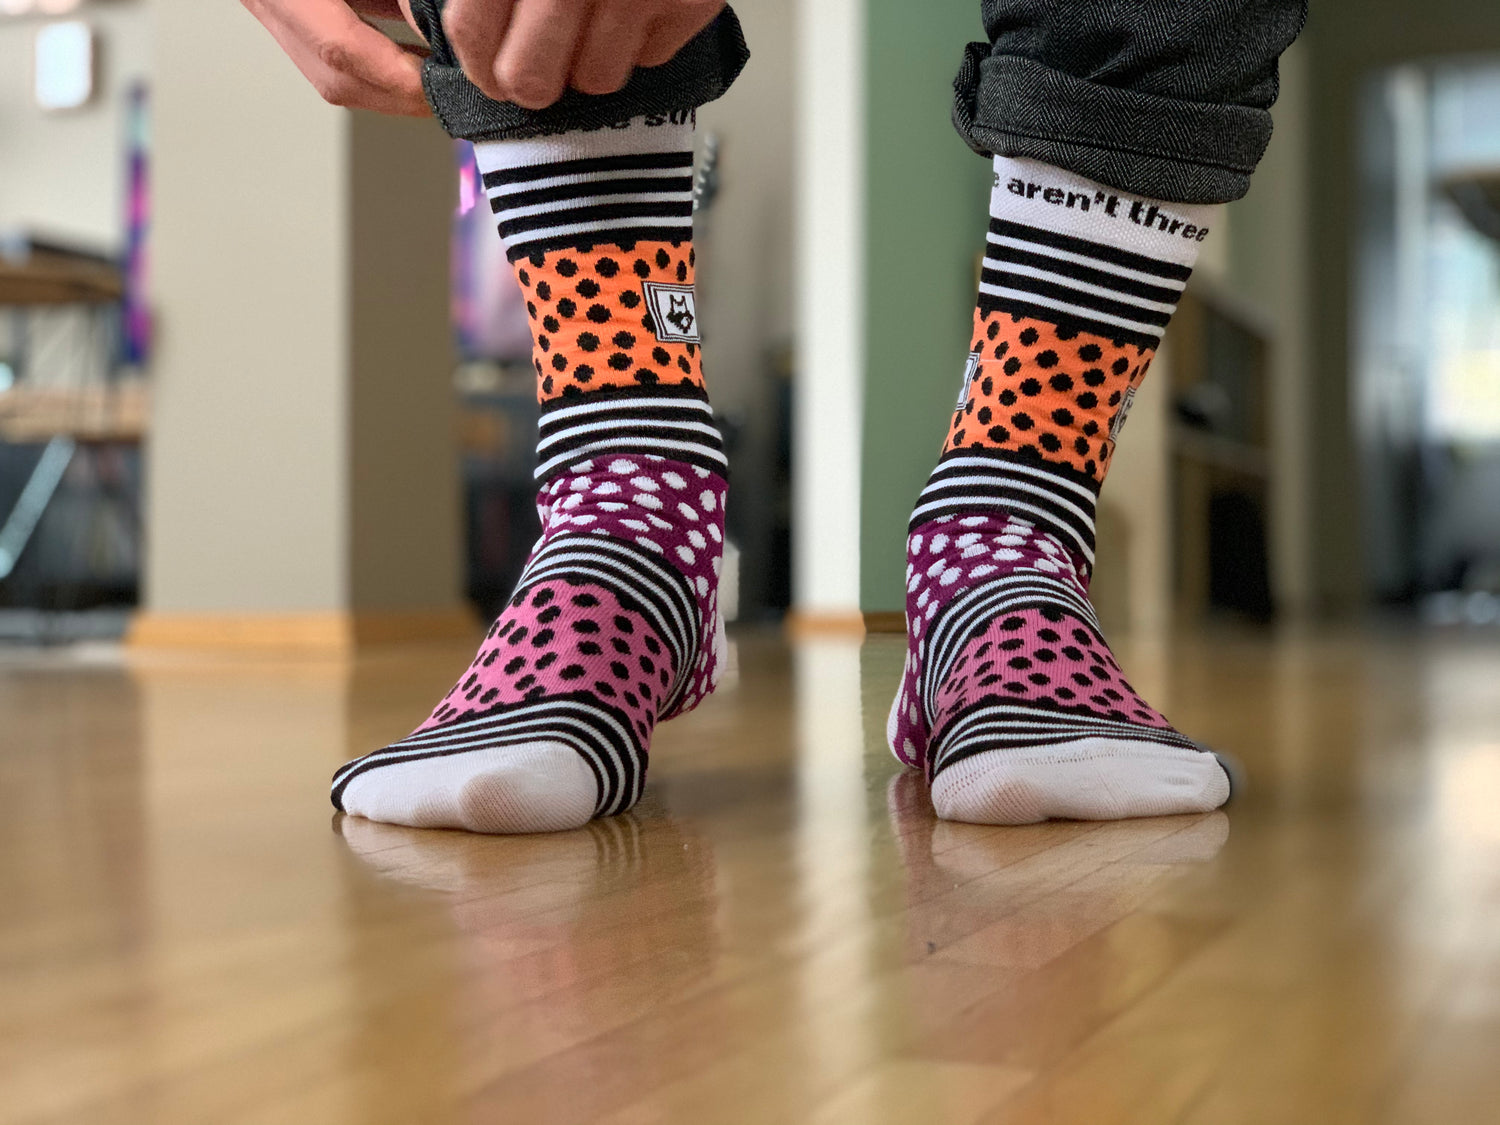 Beginne deinen Tag mit bunten YoRocket Socken!